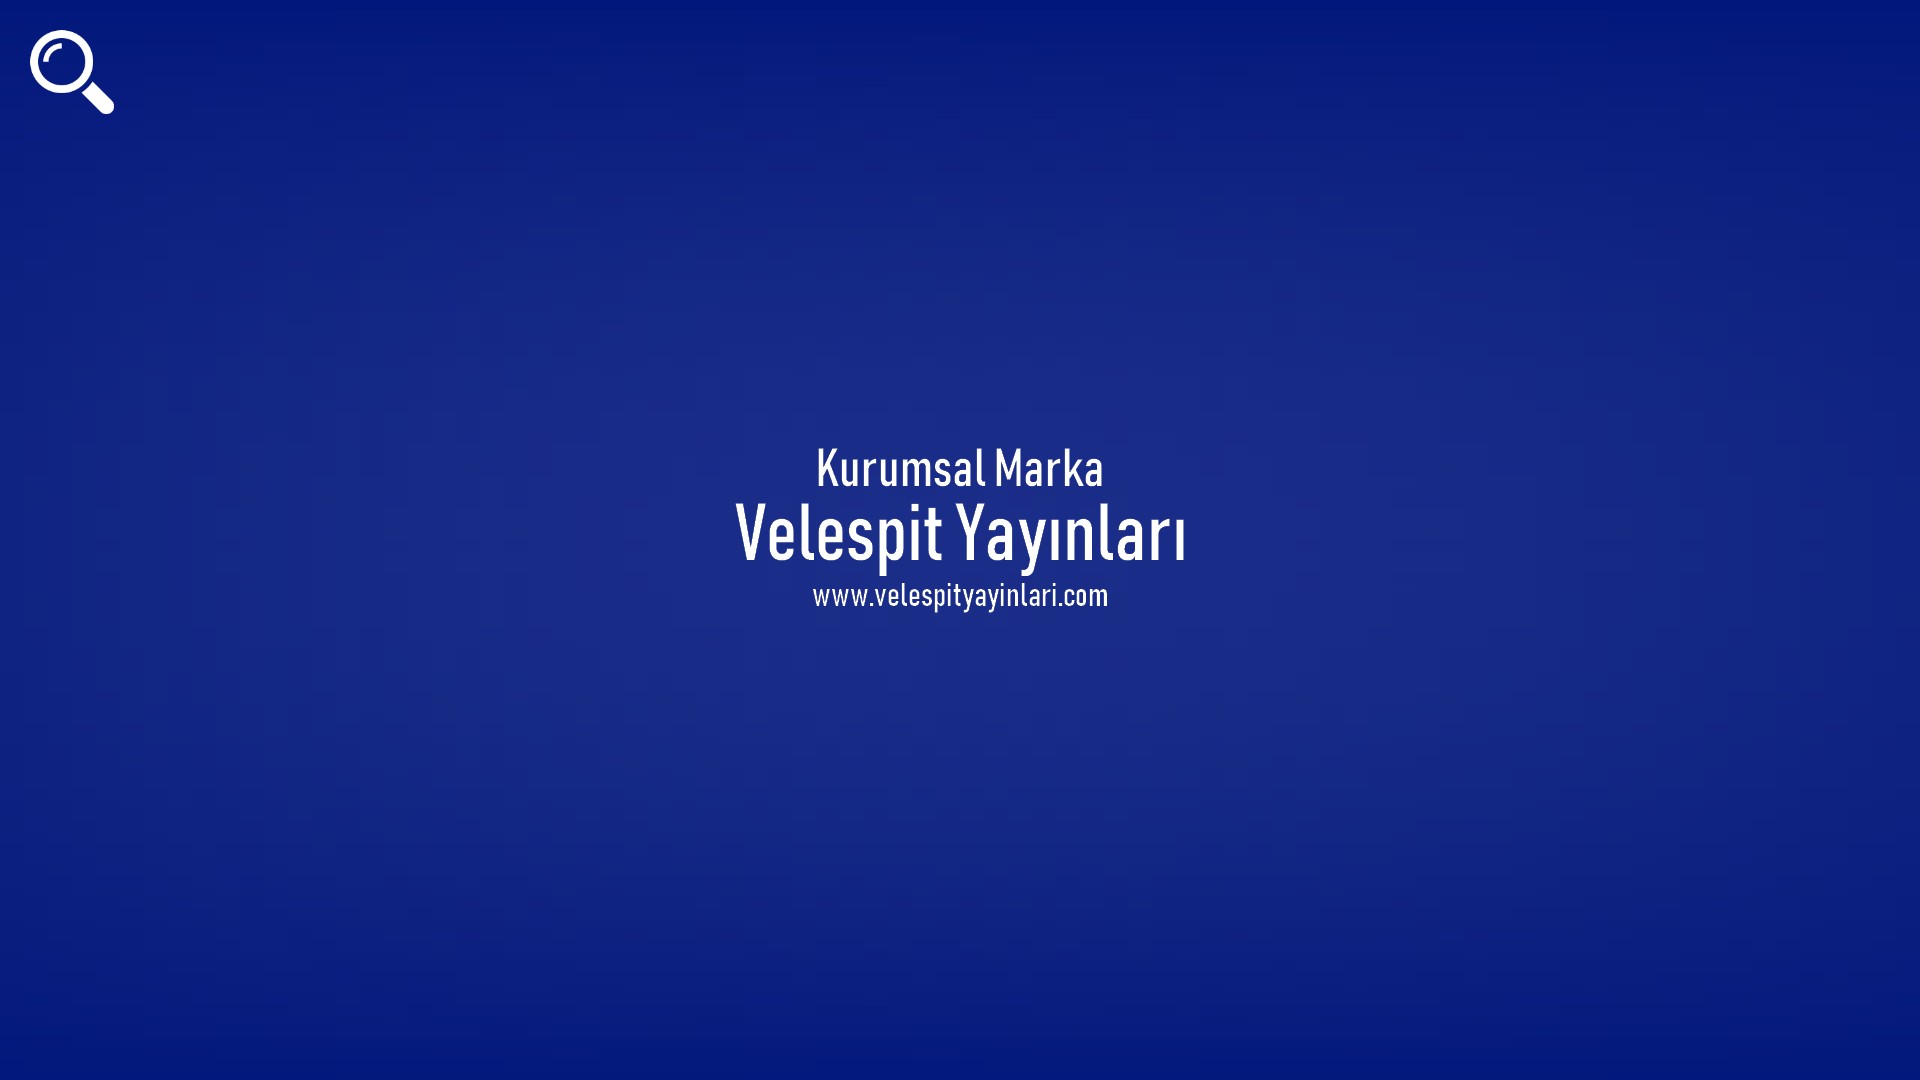 Velespit Yayınları başlıklı içeriğin kapak resmi.